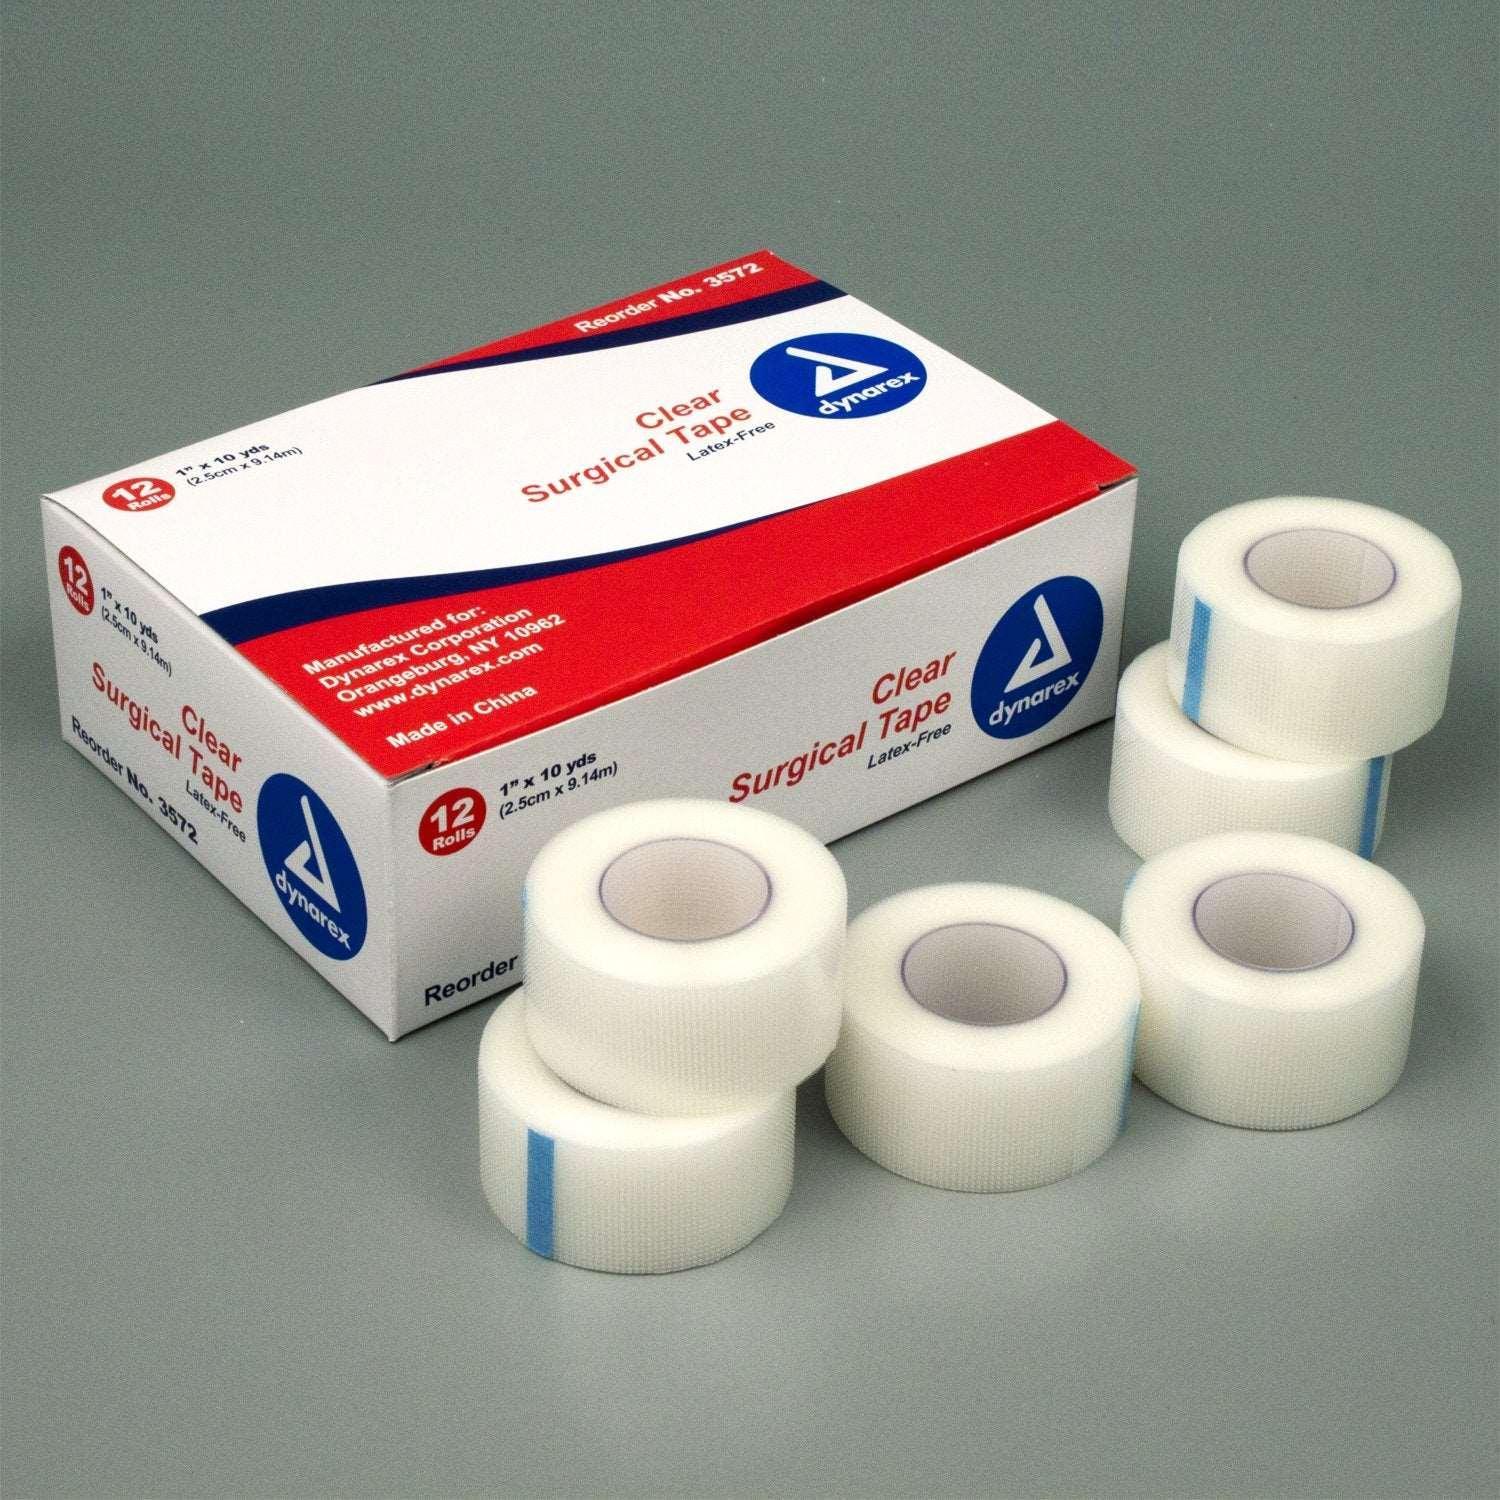 Dynarex Clear Adhesive Medical Tape 1 x 10 Yd 1 Box, 12 Rolls/Box